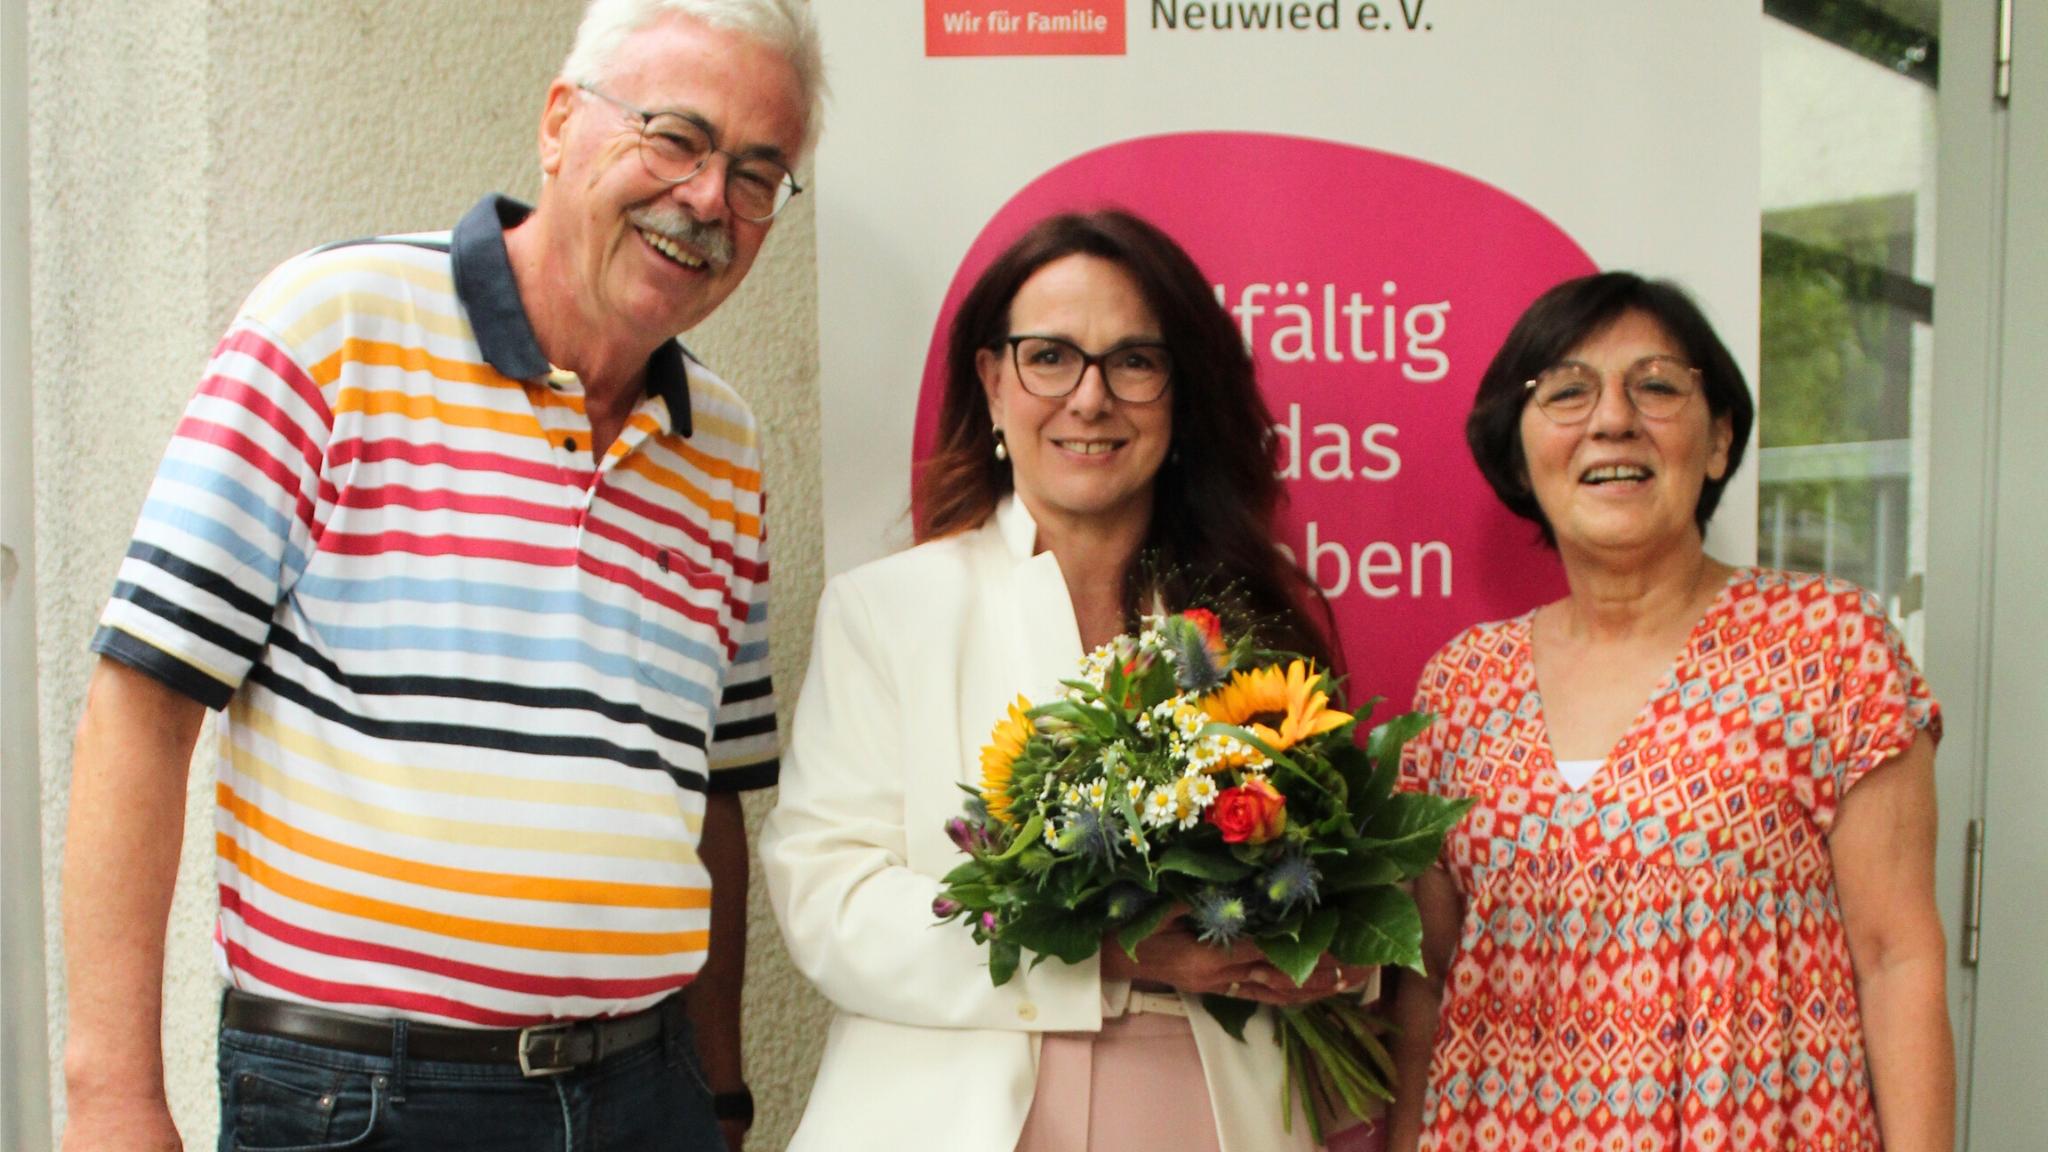 Der Vorstandsvorsitzender der katholischen Familienbildungsstätte Neuwied, Karl-Josef Heinrichs und die zweite Vorsitzende Klaudia Heck-Ritter (rechts) gratulieren der neuen geschäftsführenden Leiterin, Sylvia Schifano.